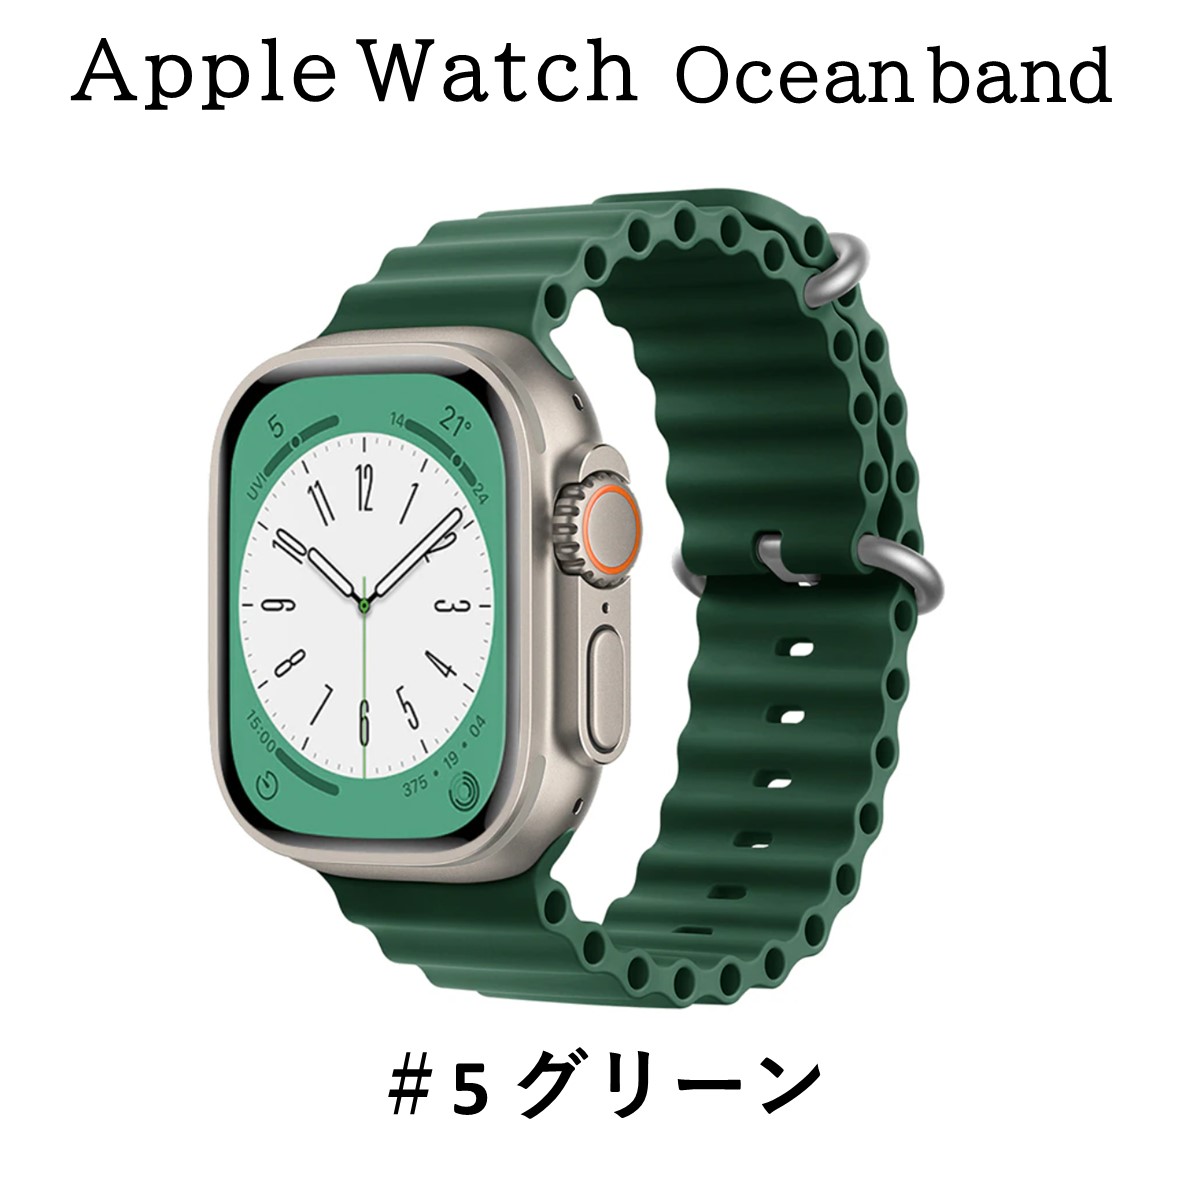 アップルウォッチ バンド Apple Watch オーシャンバンド ベルト 